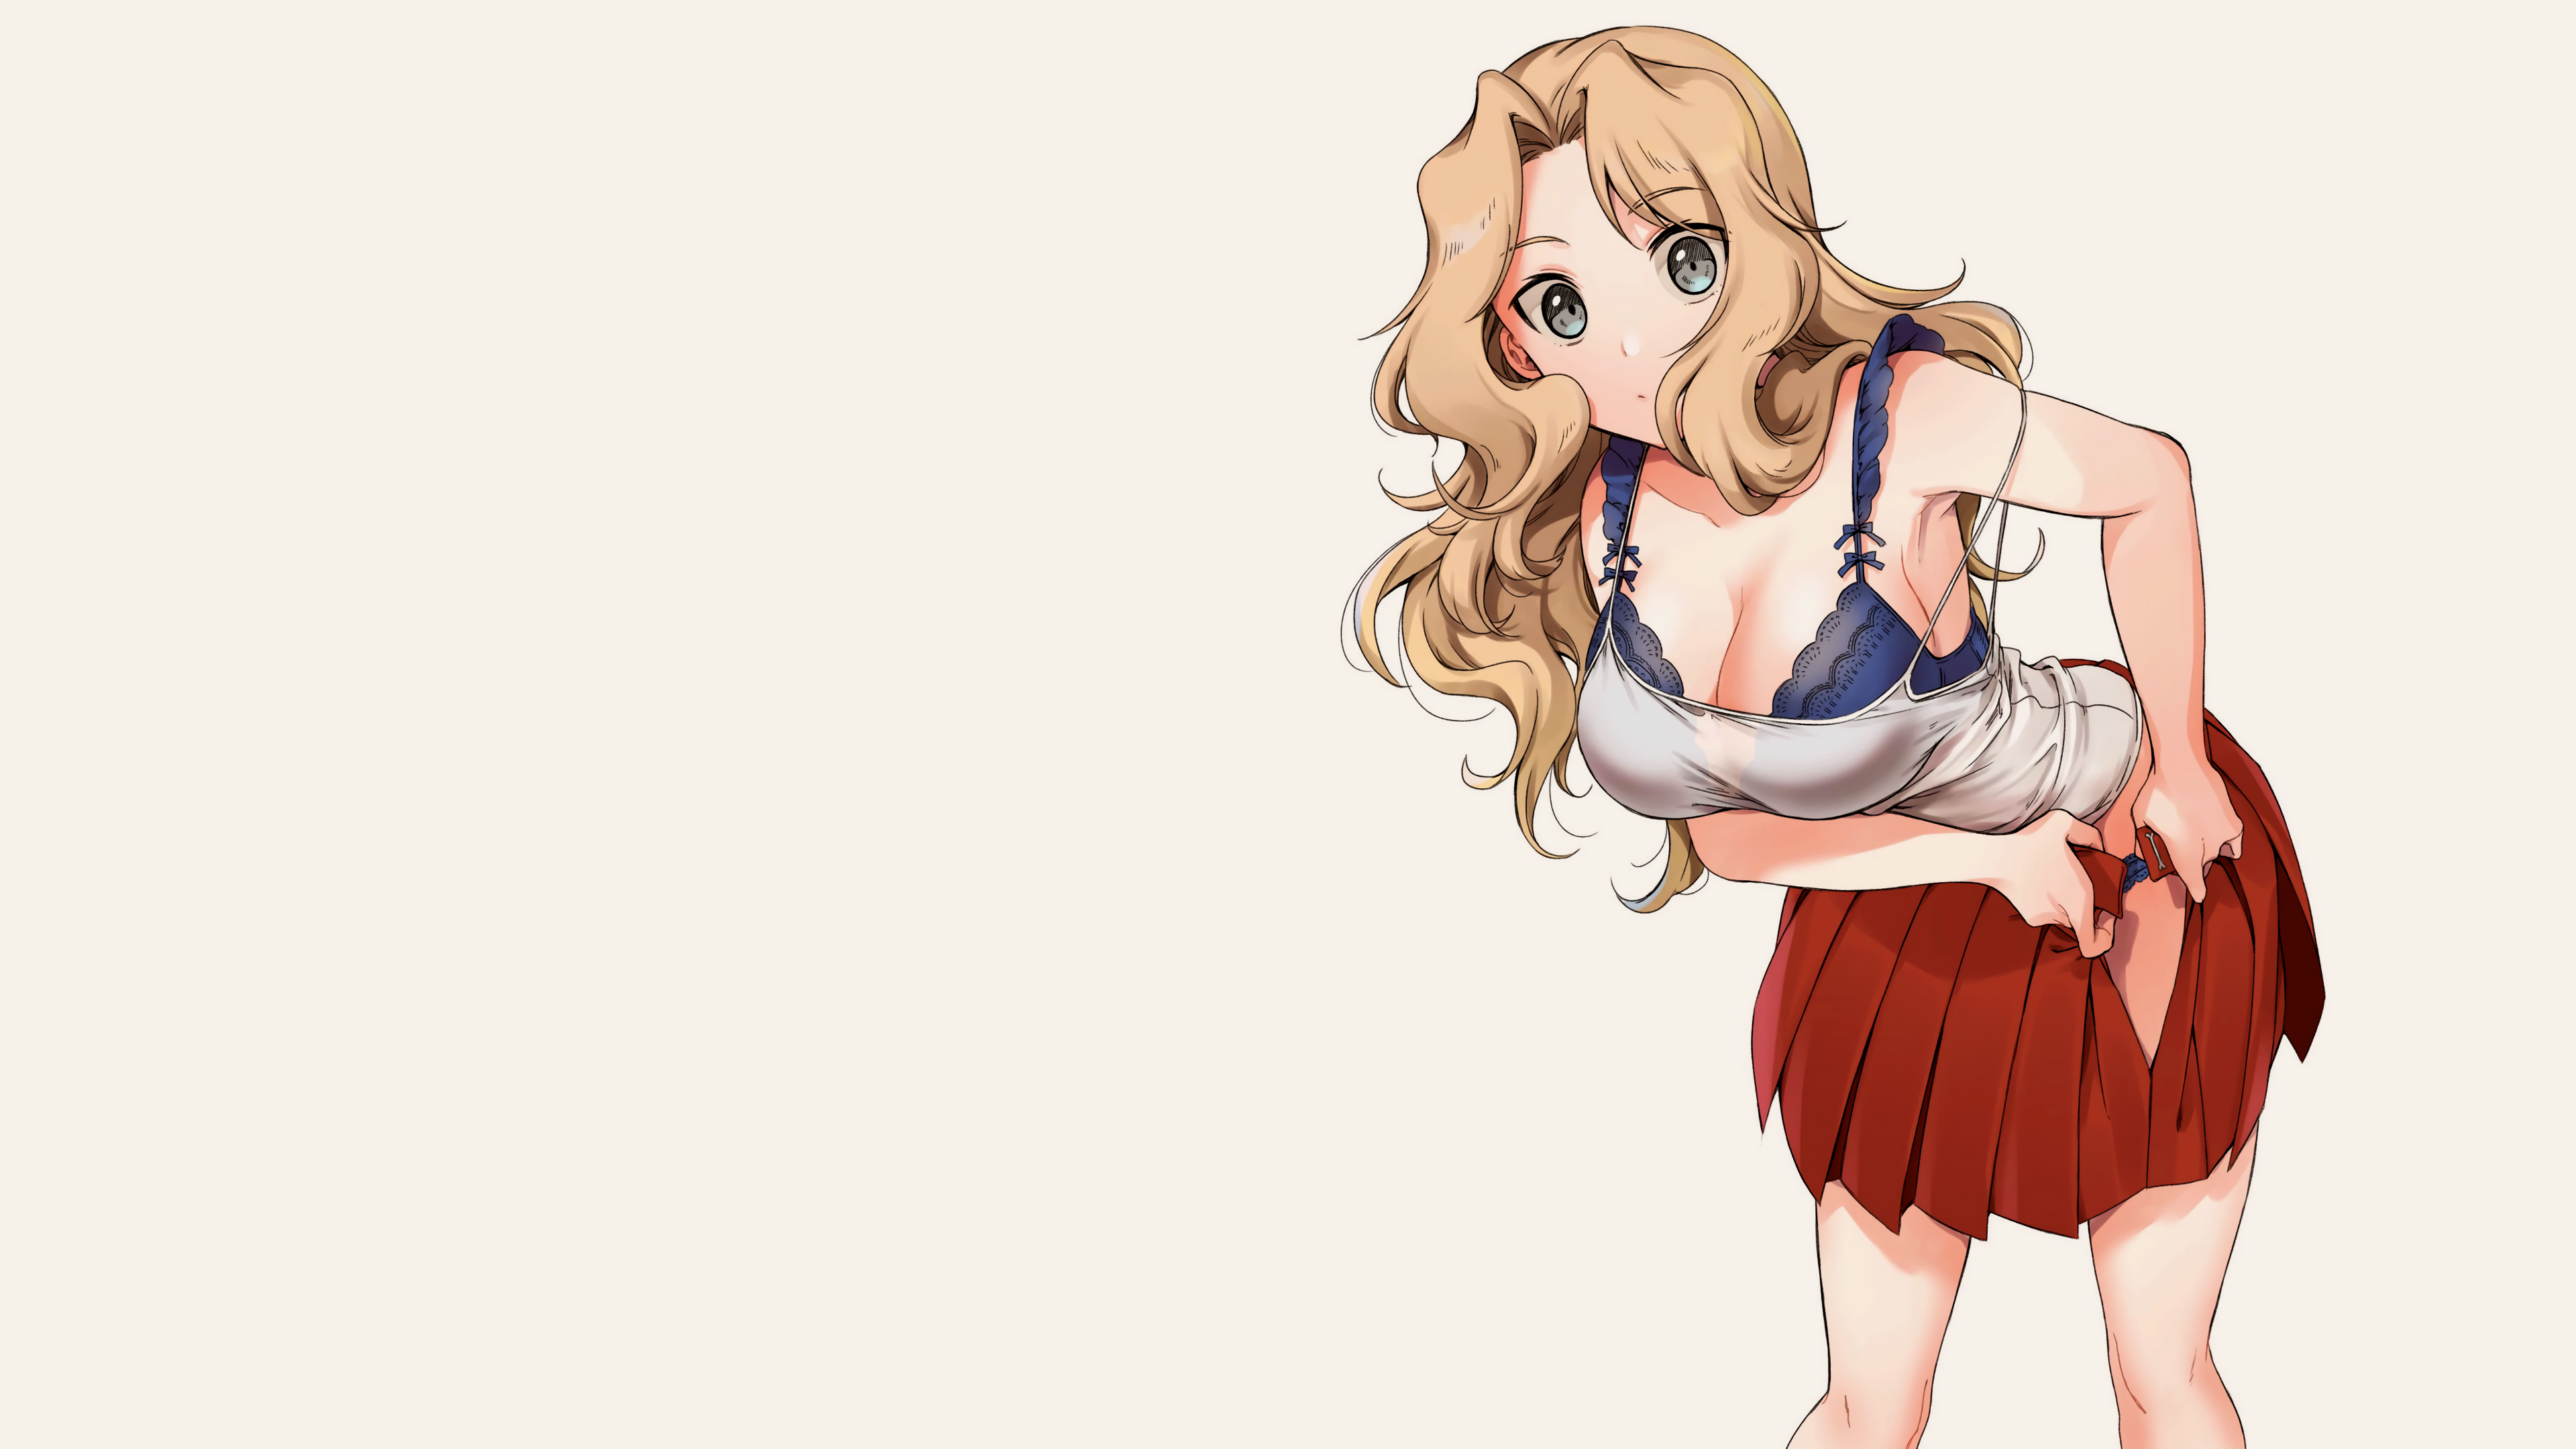 Anime 3840x2160 blonde anime girls bra straps bra skirt removing skirt